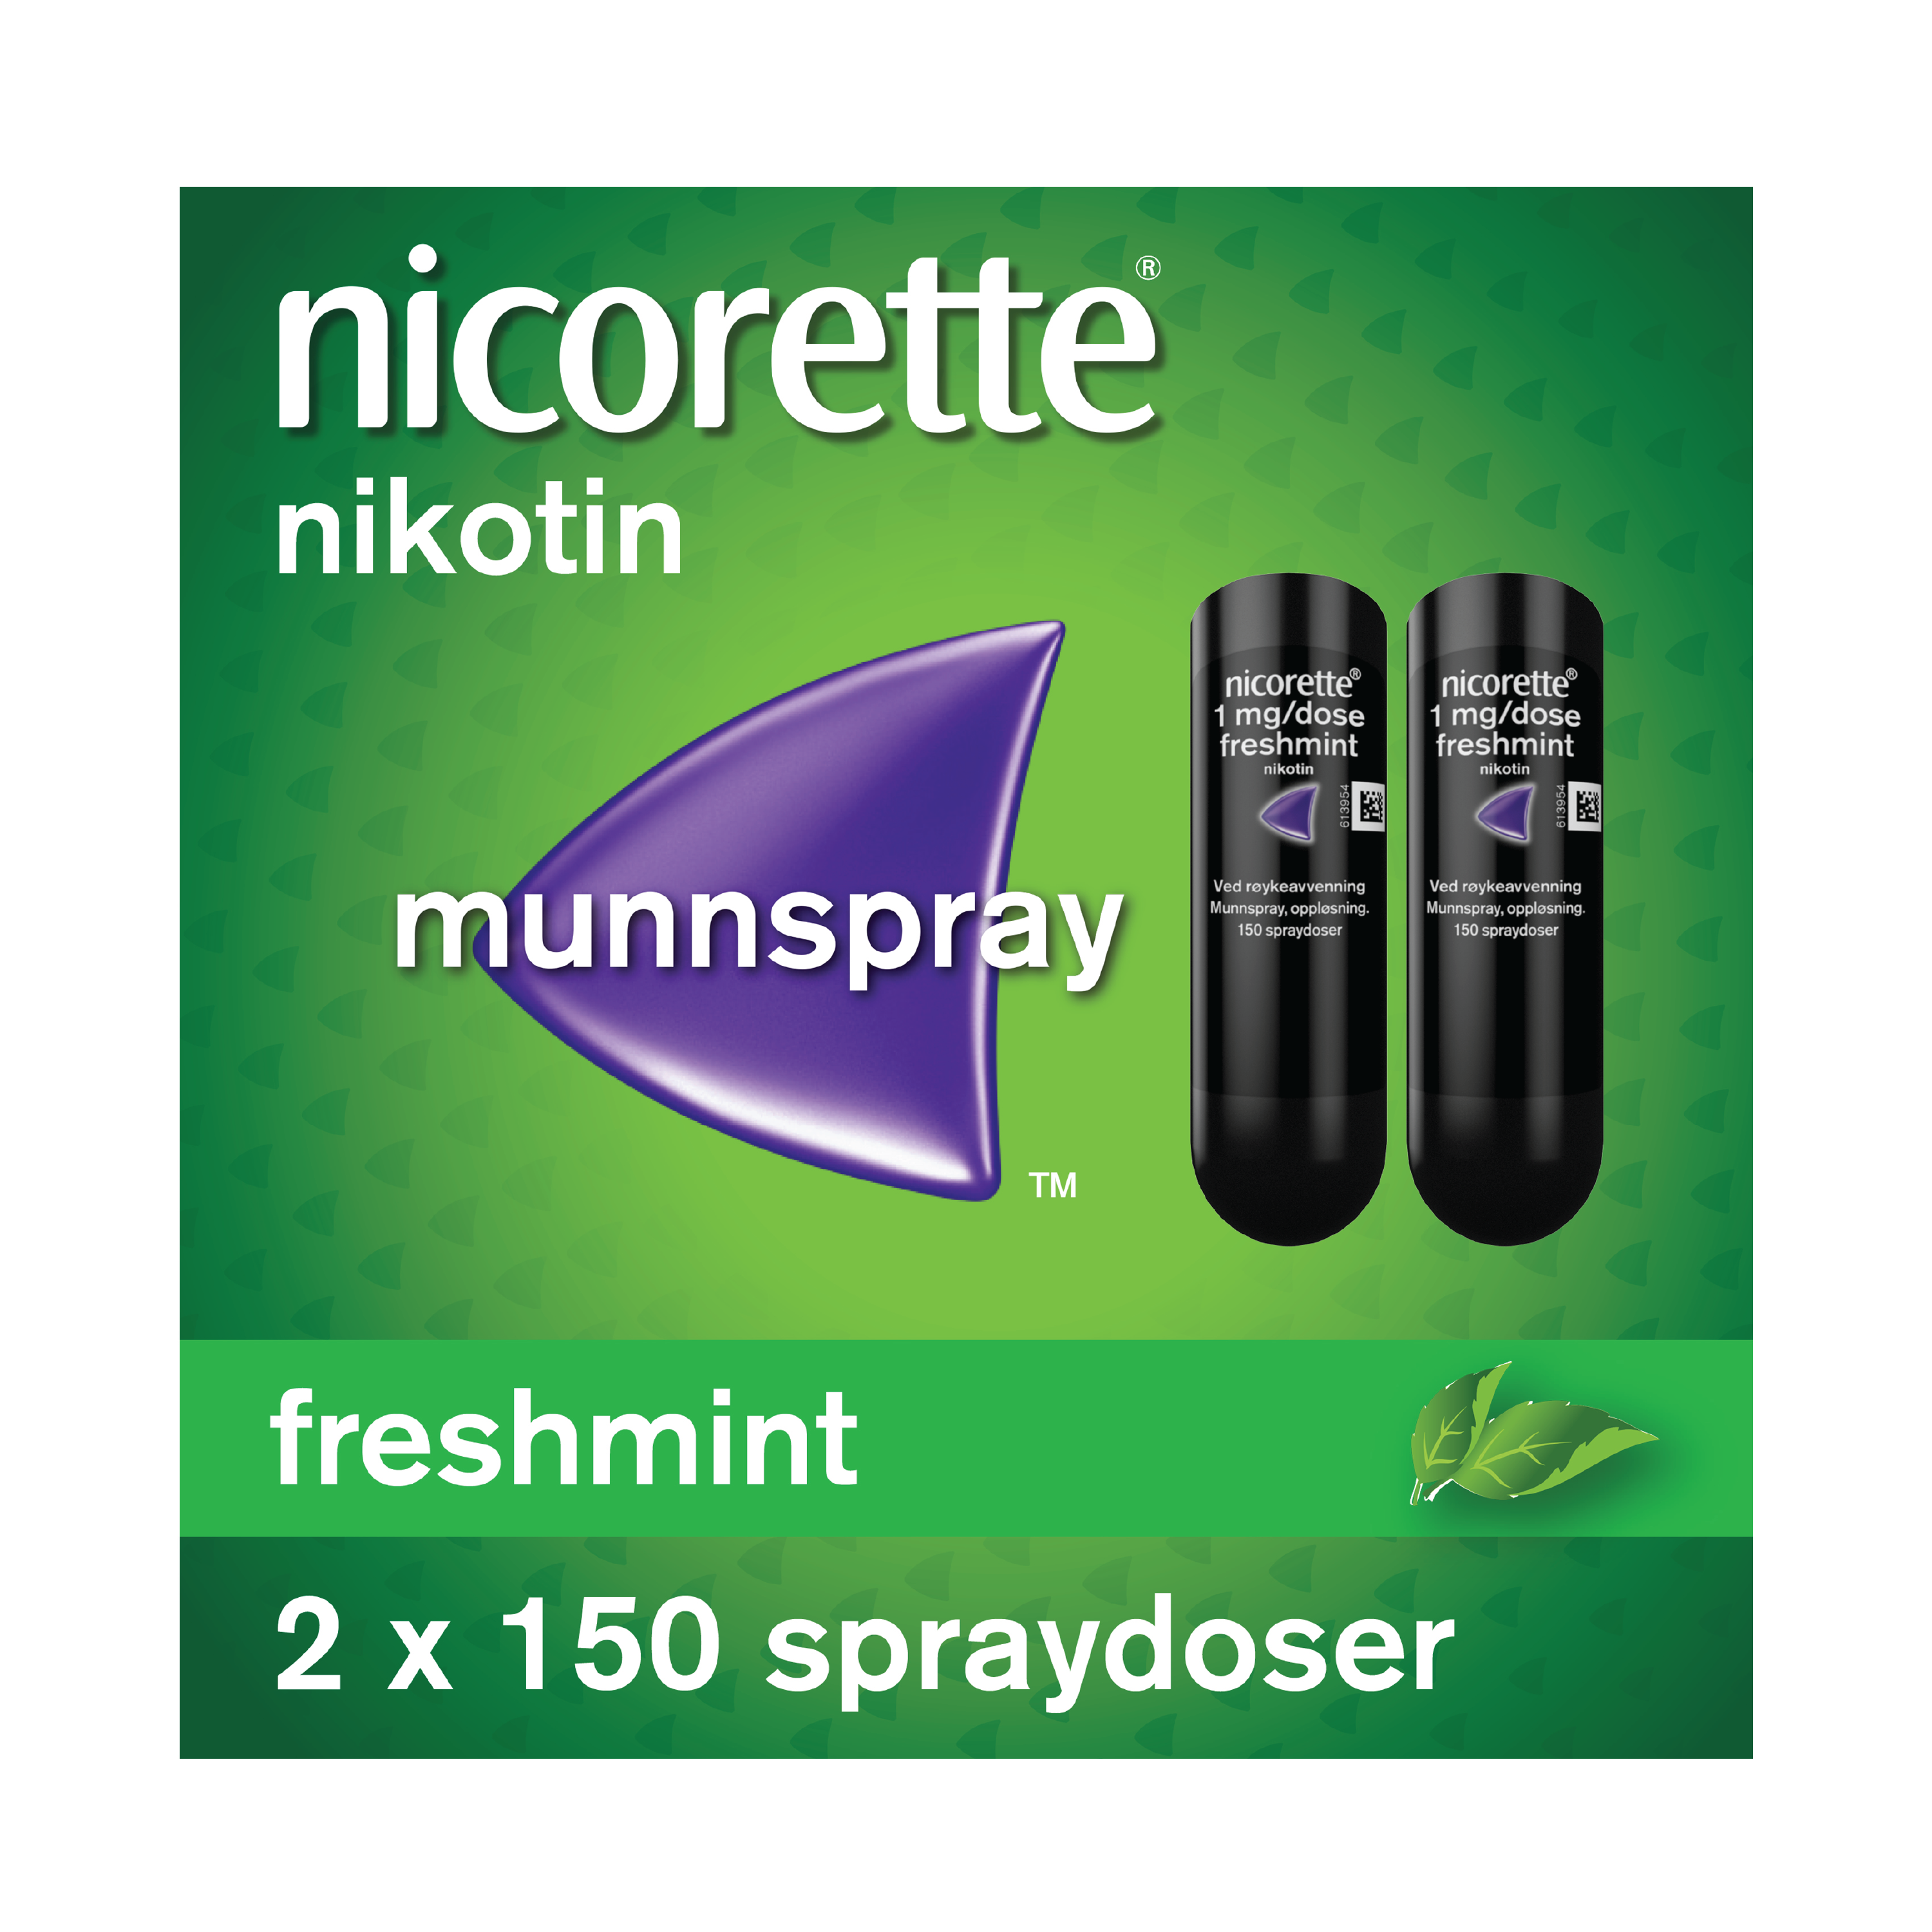 Nicorette Munnspray, 2 x 150 doser.